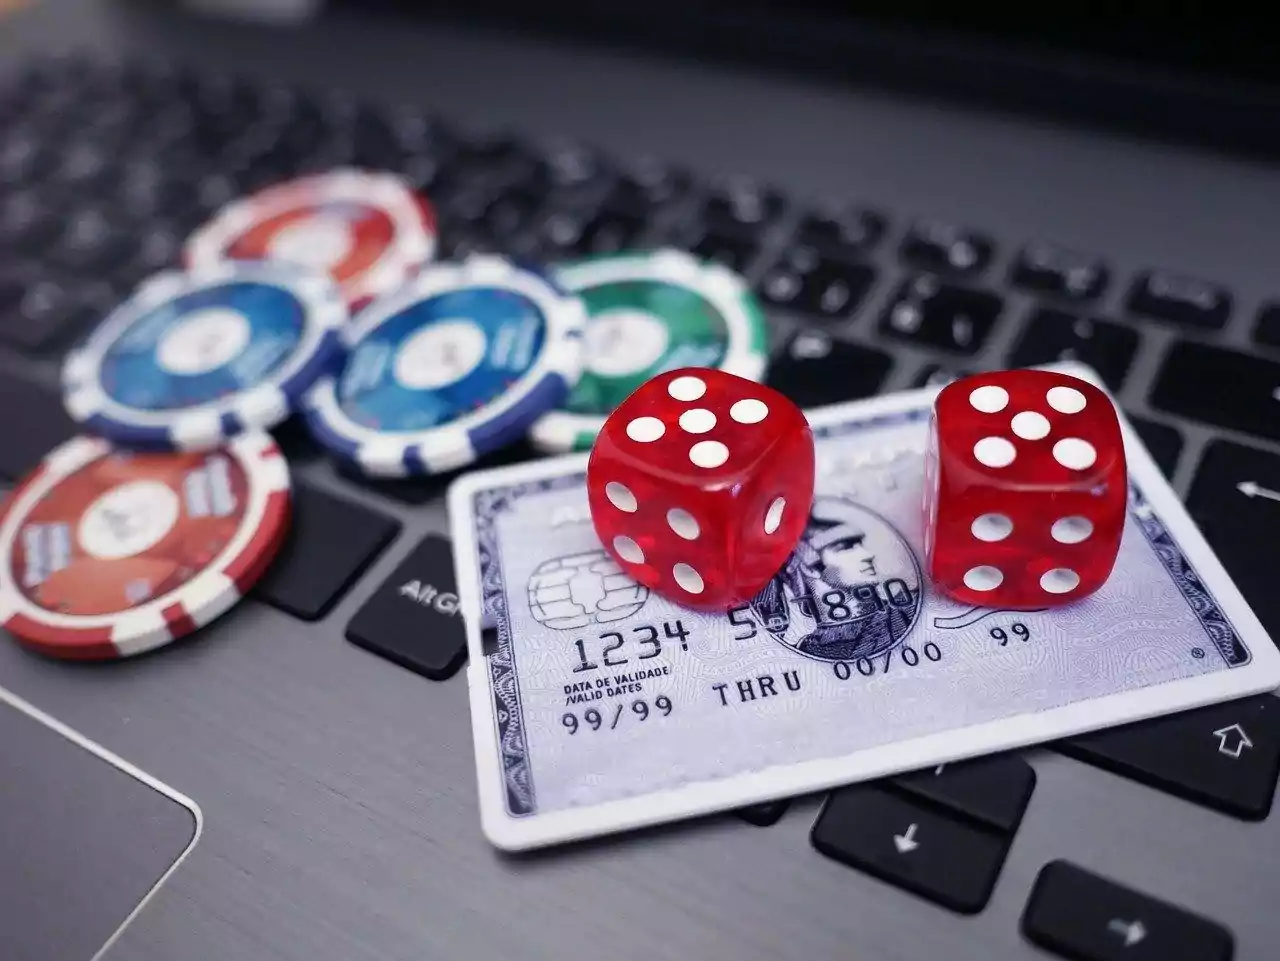 Vậy, như thế nào là game cờ bạc online đúng nghĩa?